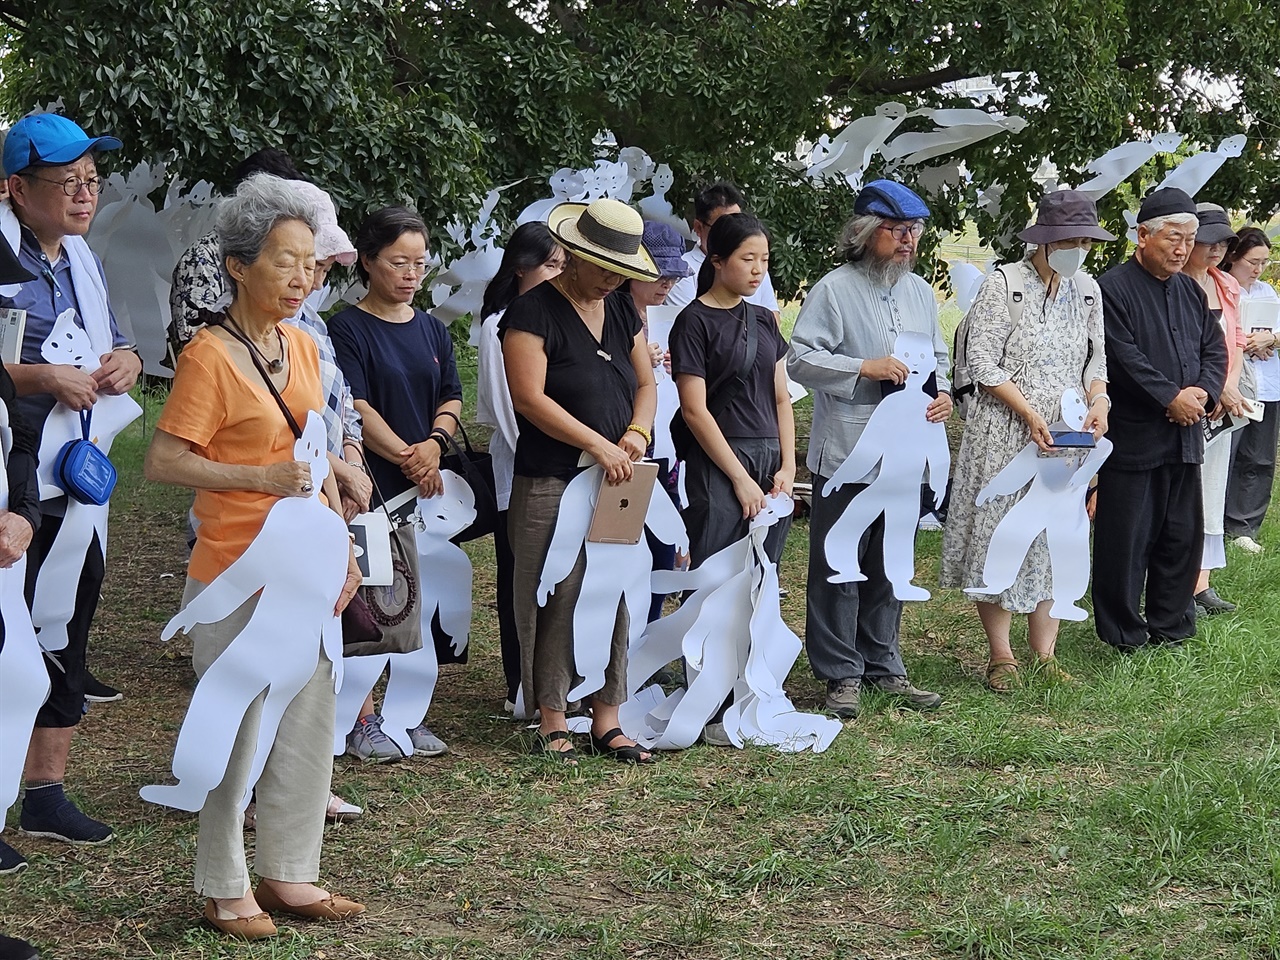 9월 3일, 씨알재단 주관으로 동경 아라카와 강변에서 열린 관동대학살 100주기 추모제 참석자들 